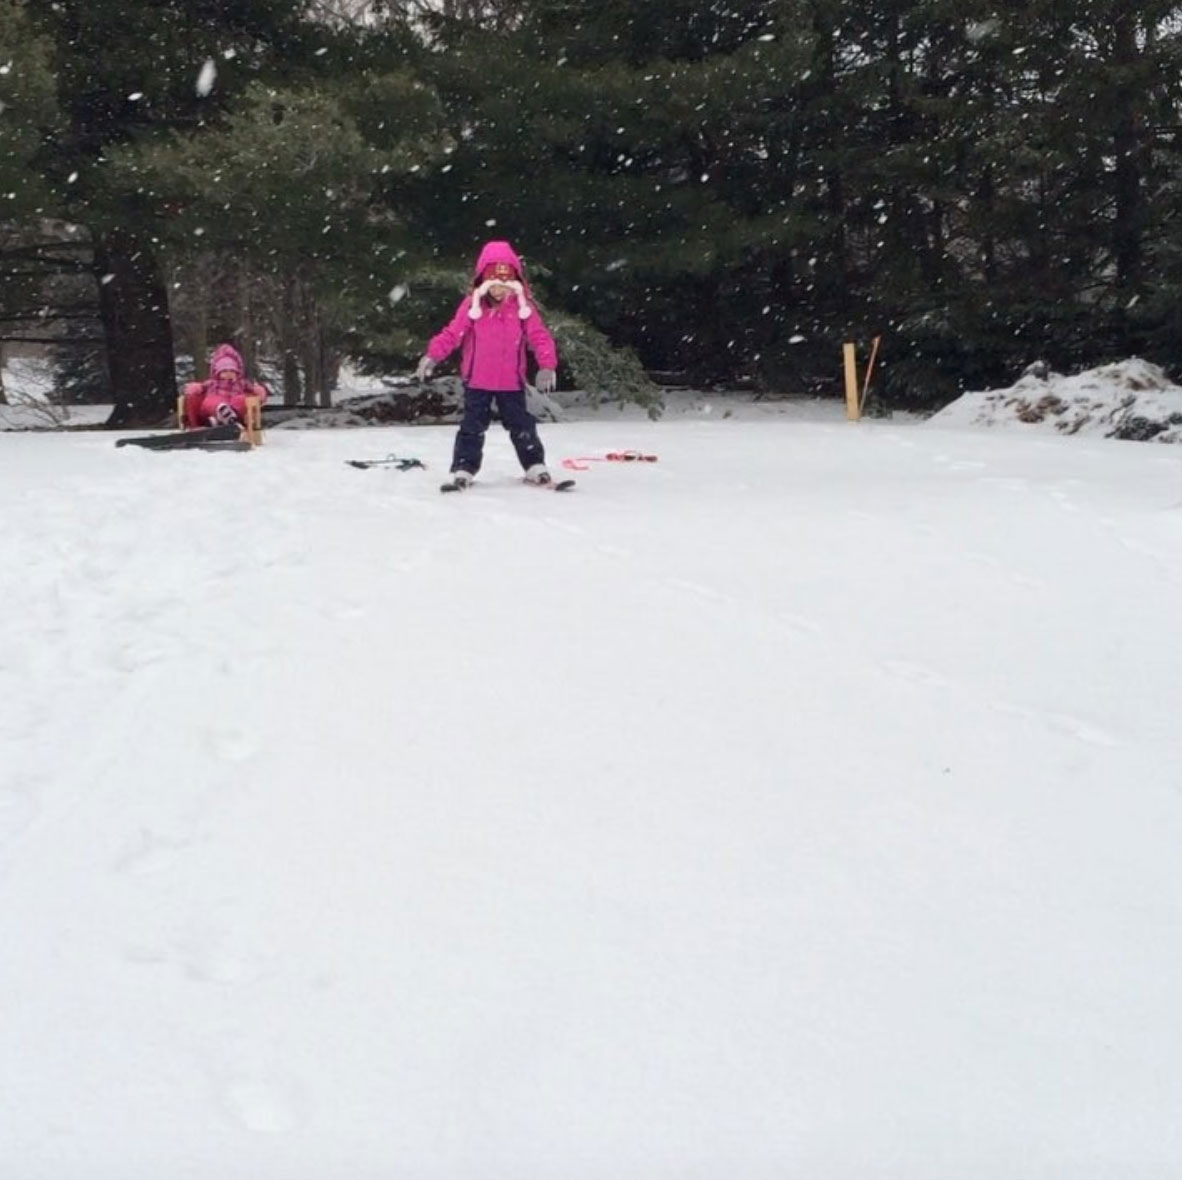 Scott McGillivray's daughters skiing